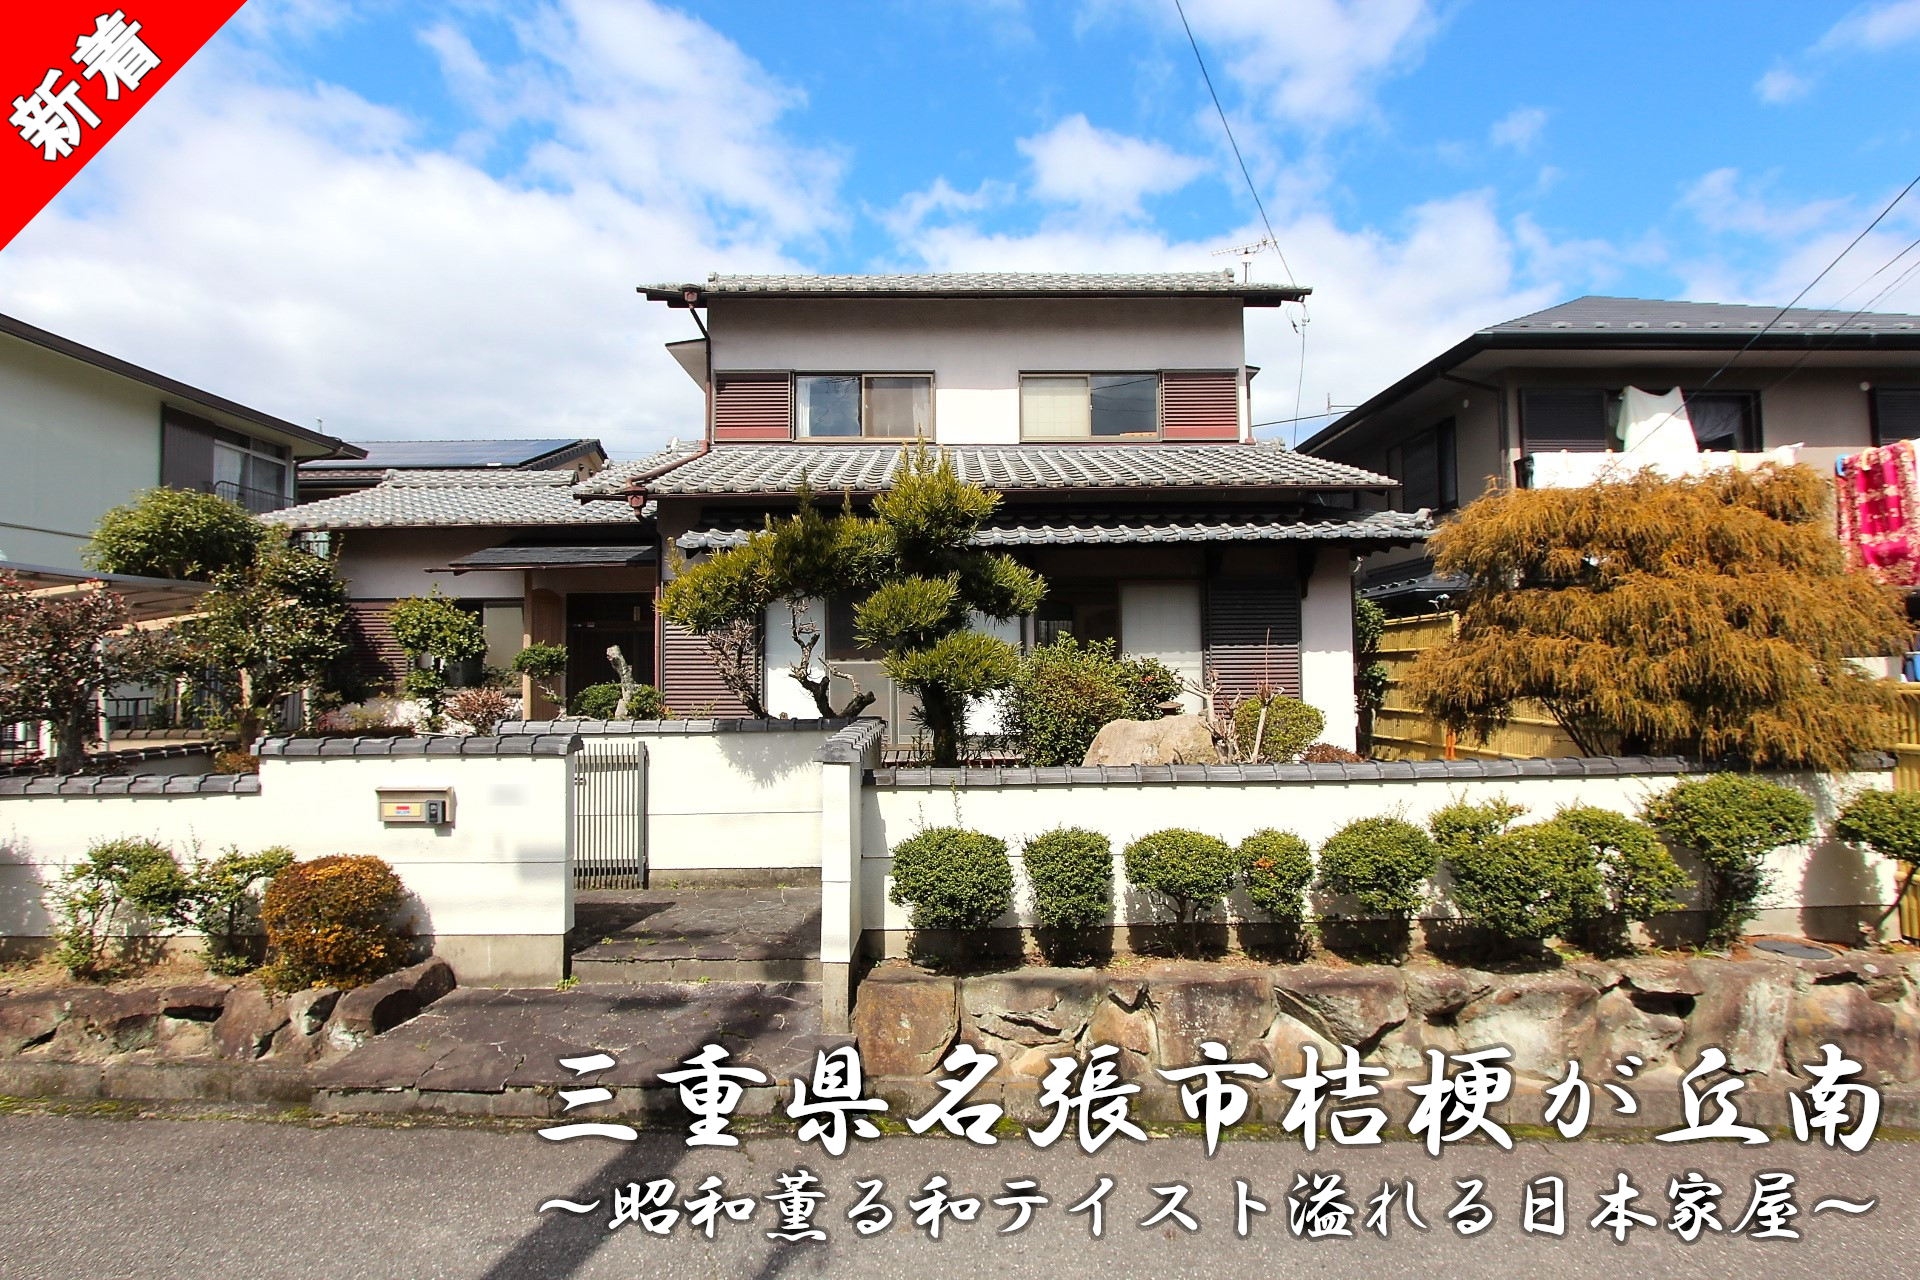 1020 三重県名張市桔梗が丘南「昭和薫る和テイスト溢れる日本家屋」